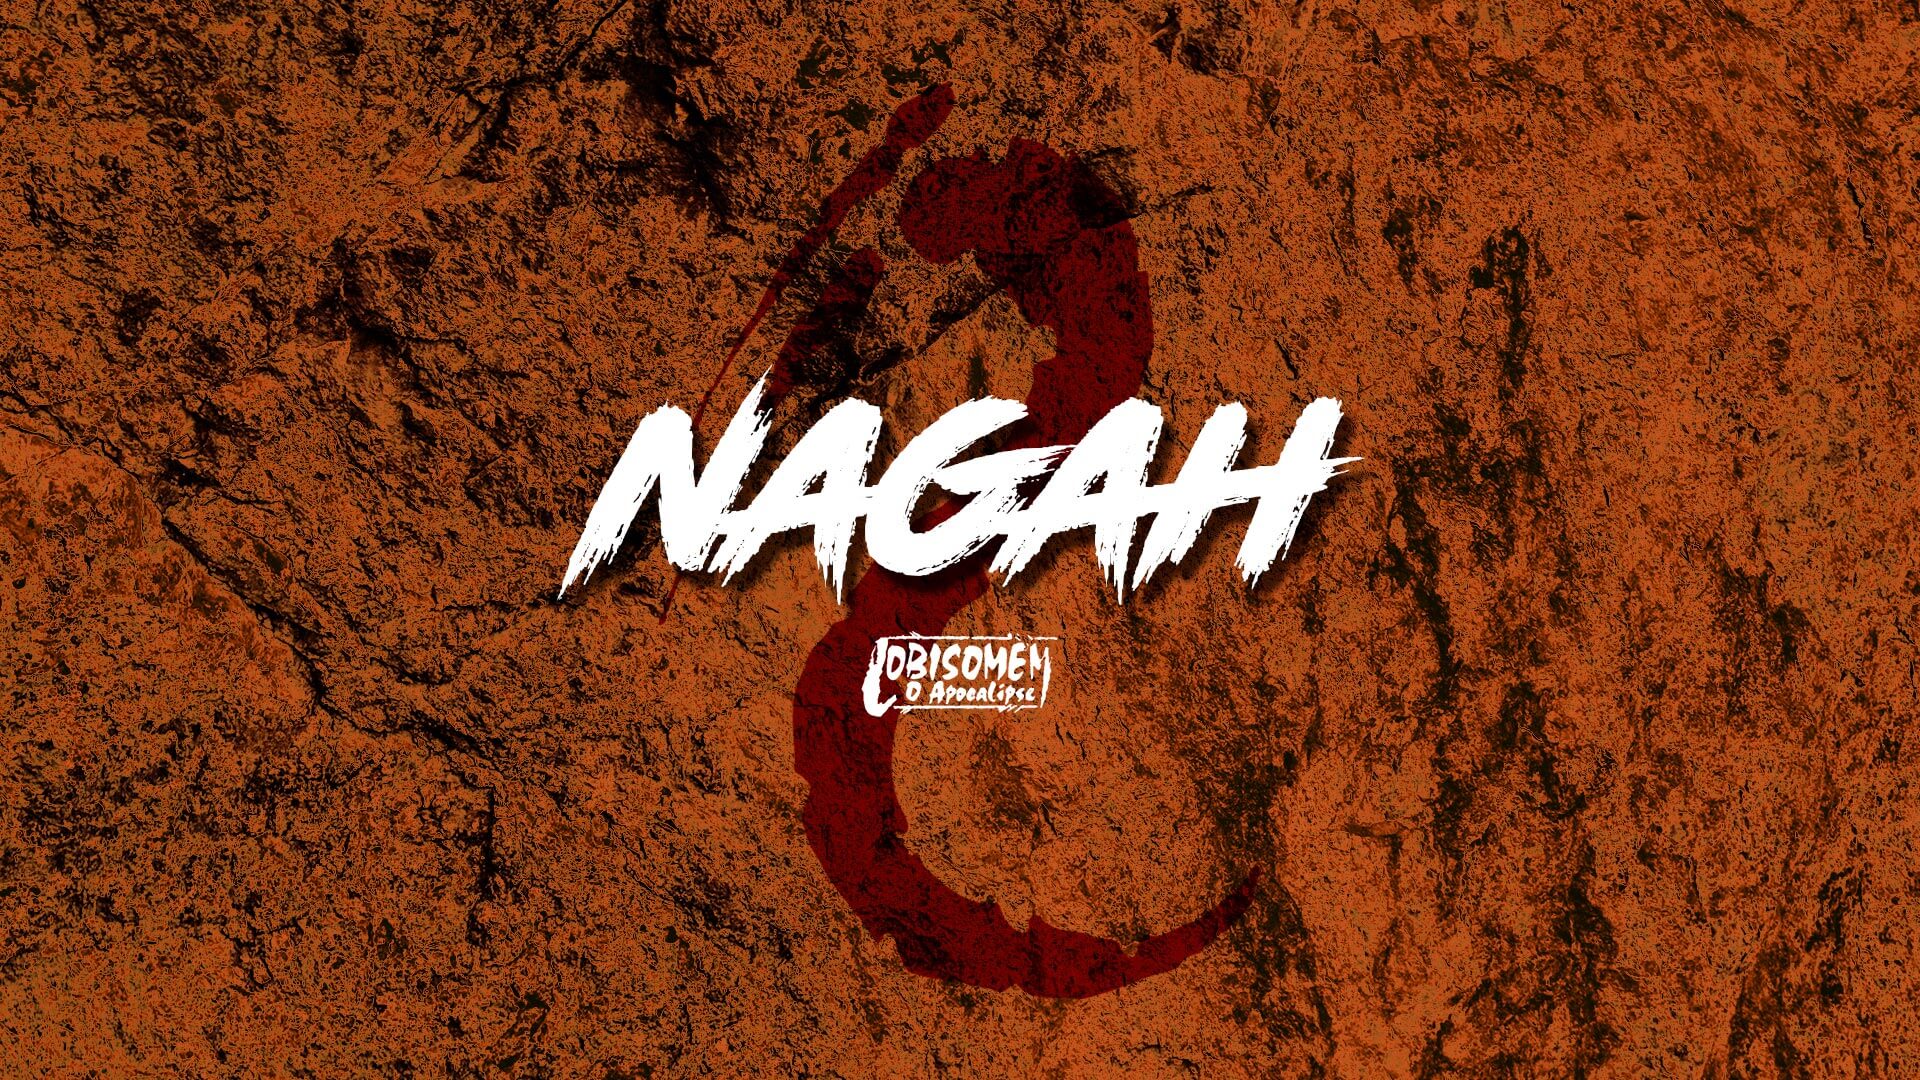 Nagah- Feras de Lobisomem O Apocalipse